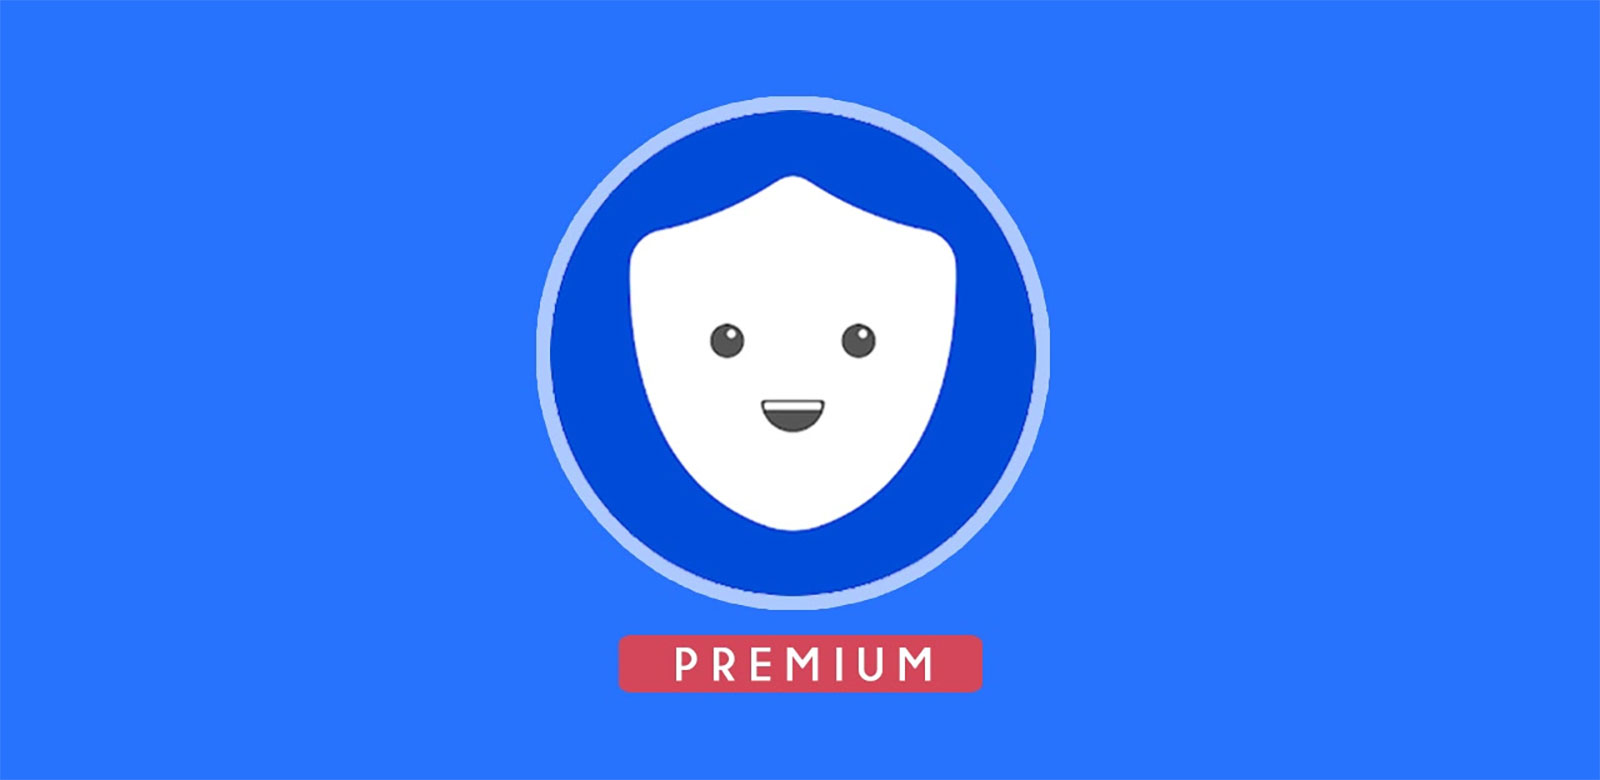 Betternet VPN Premium 5.3.0.433 With Full Crack